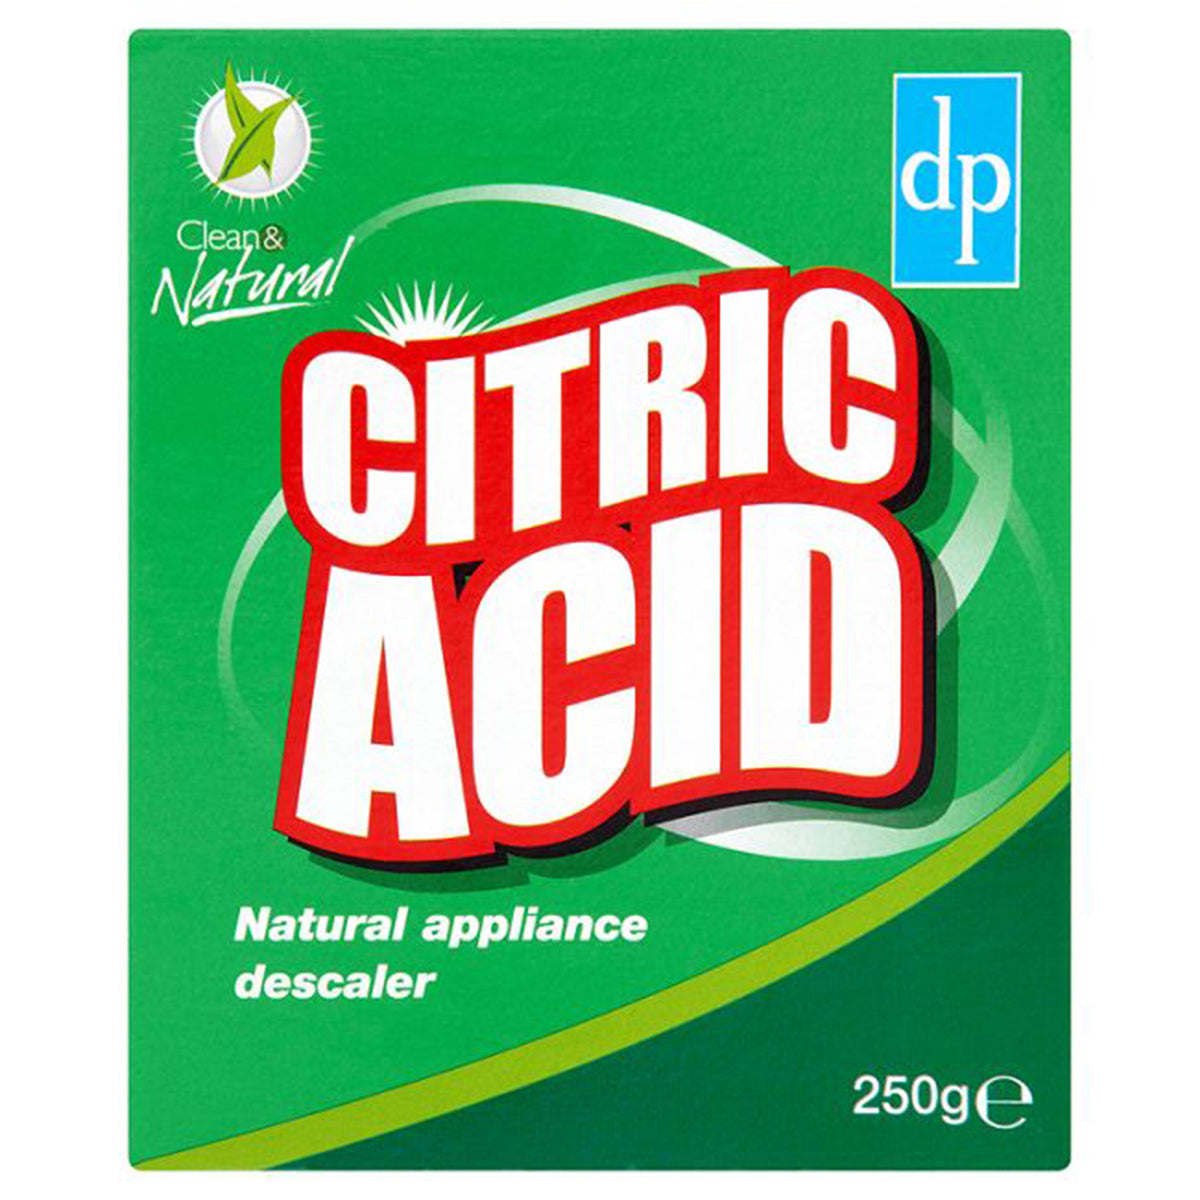 Dri Pak - Citric Acid Natural Appliance Descaler - 250g